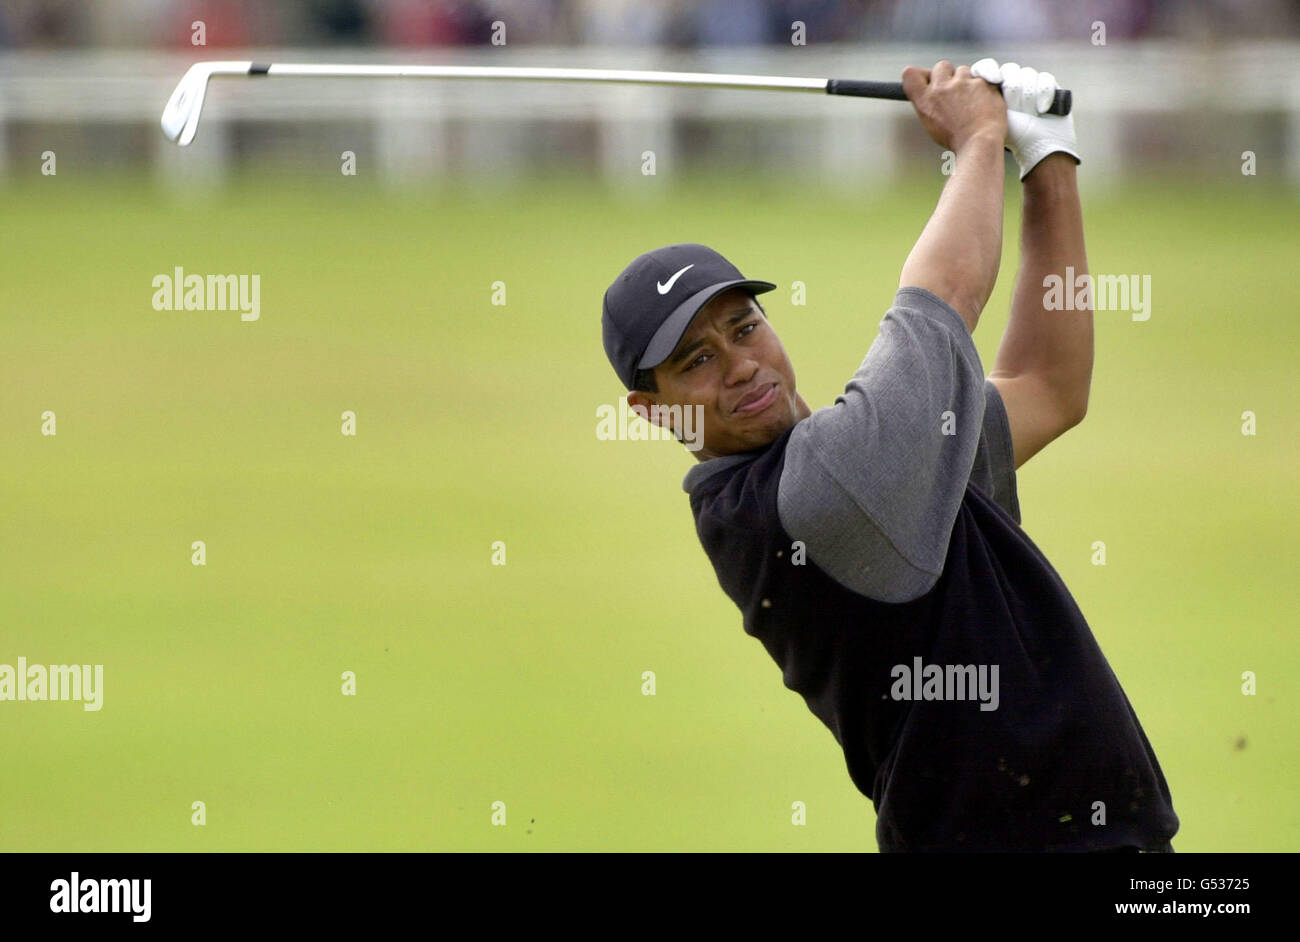 Tiger Woods d'Amérique en action sur le 2ème tee au Championnat de golf ouvert 2000 à St Andrews en Écosse. Banque D'Images